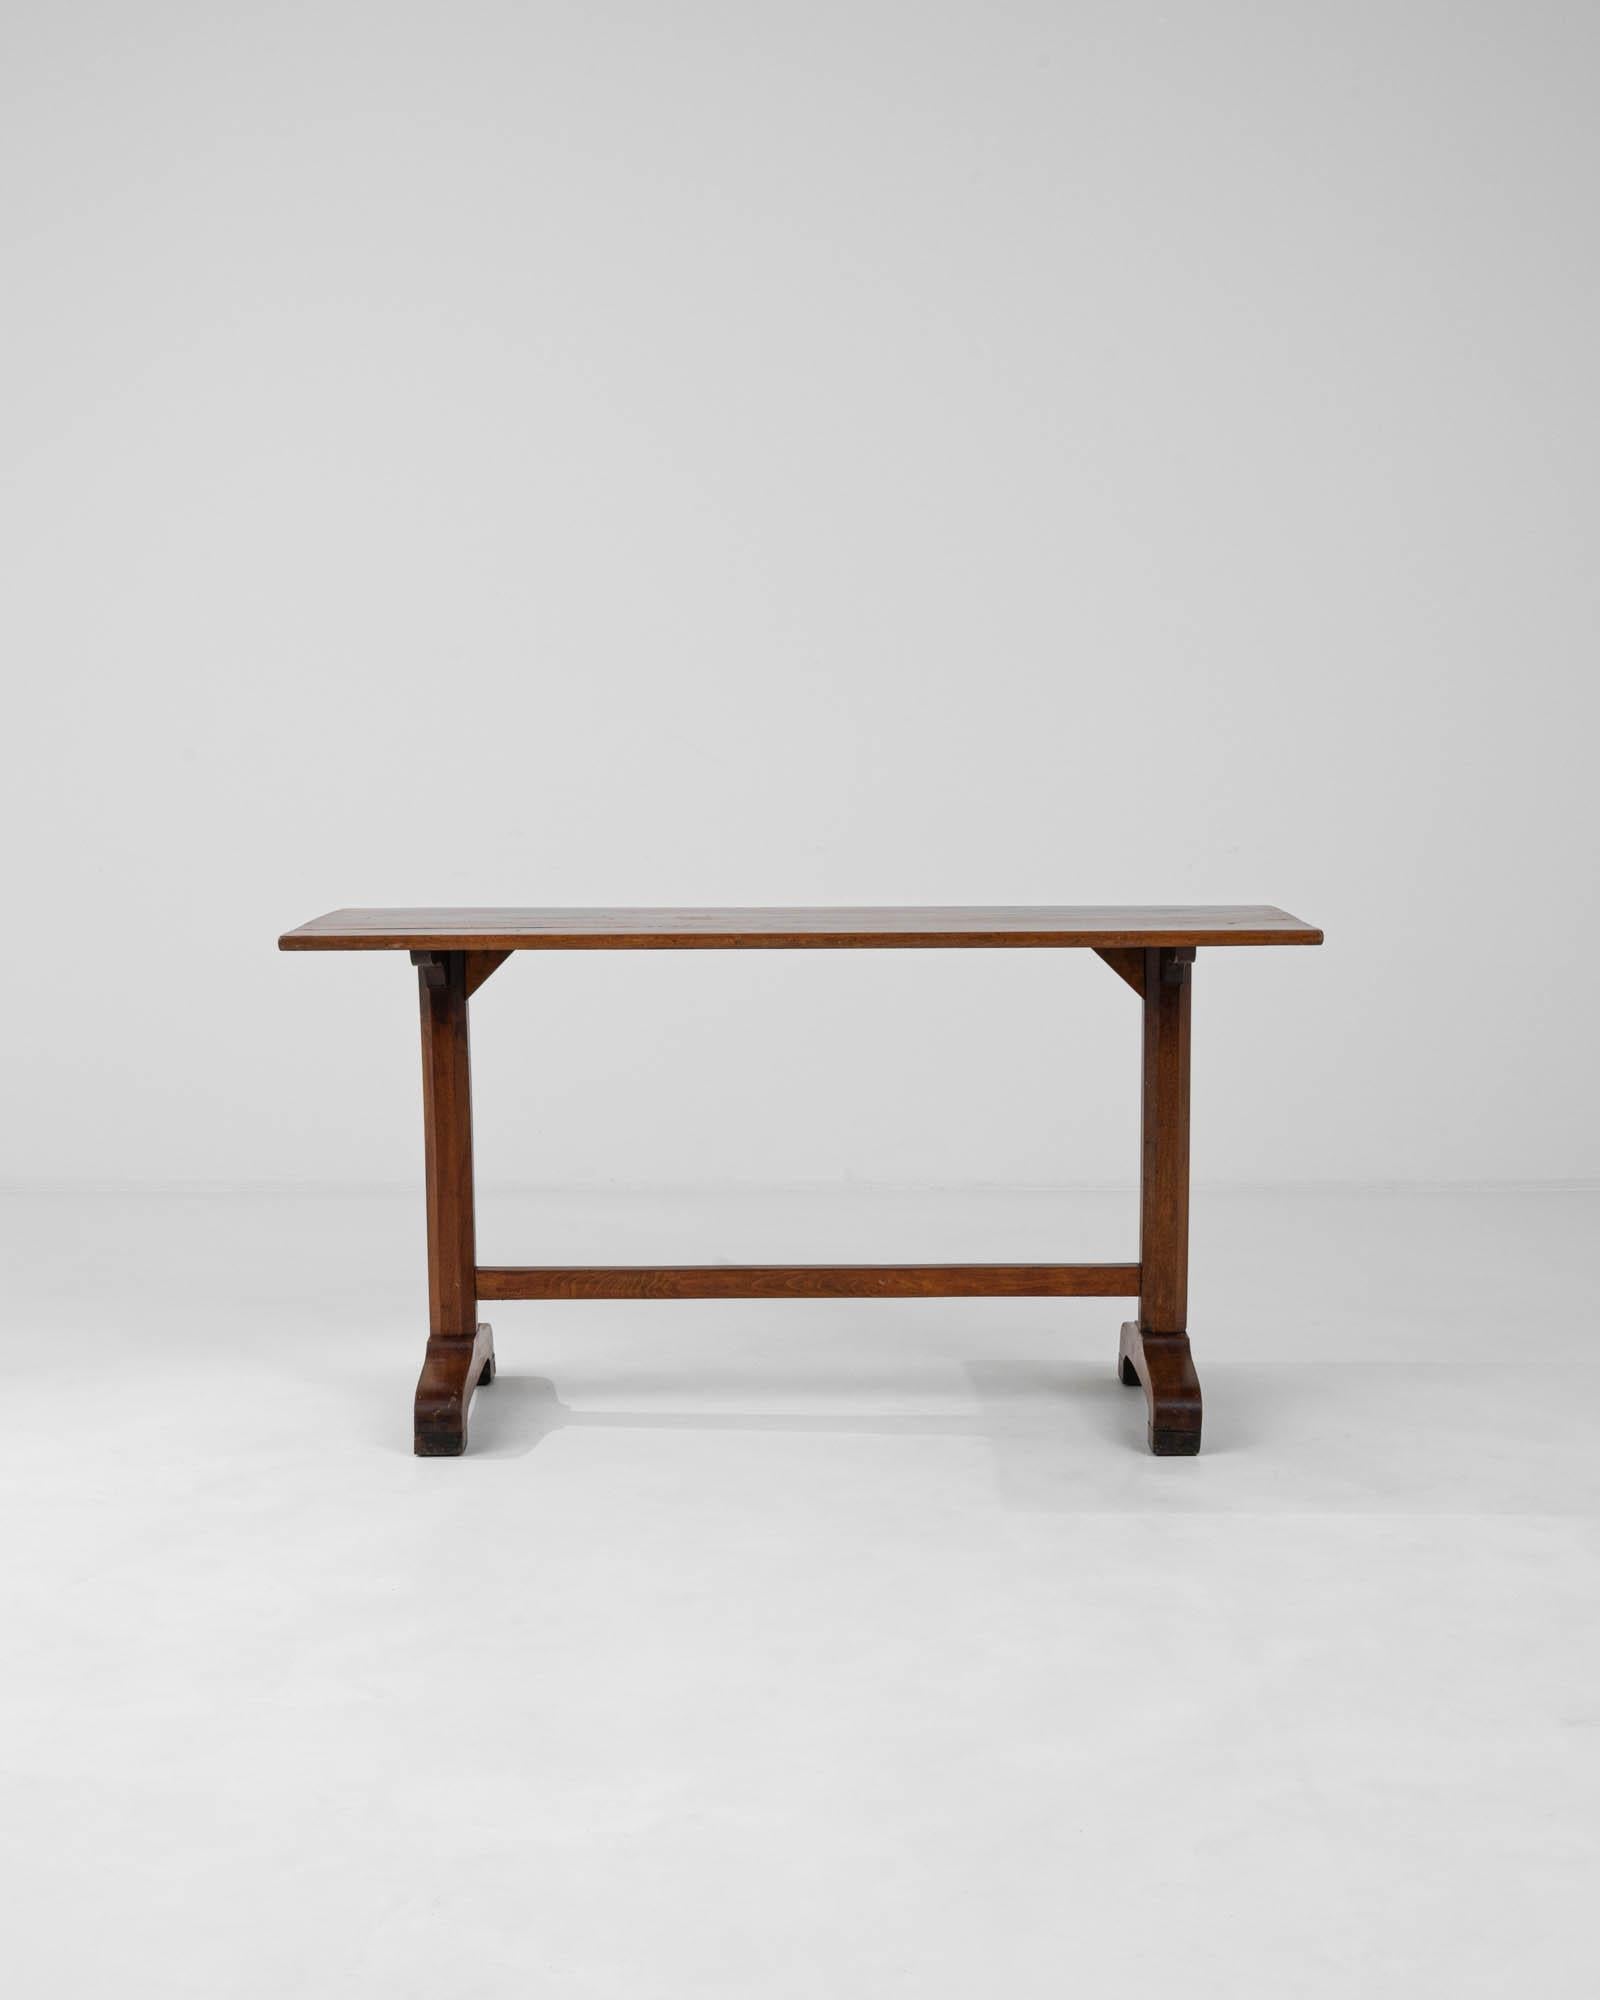 Cette exquise table française en bois des années 1900 est un magnifique artefact de son époque, rayonnant de l'essence de l'artisanat classique. La table, structurée en bois riche aux teintes chaudes, porte une patine qui raconte son histoire